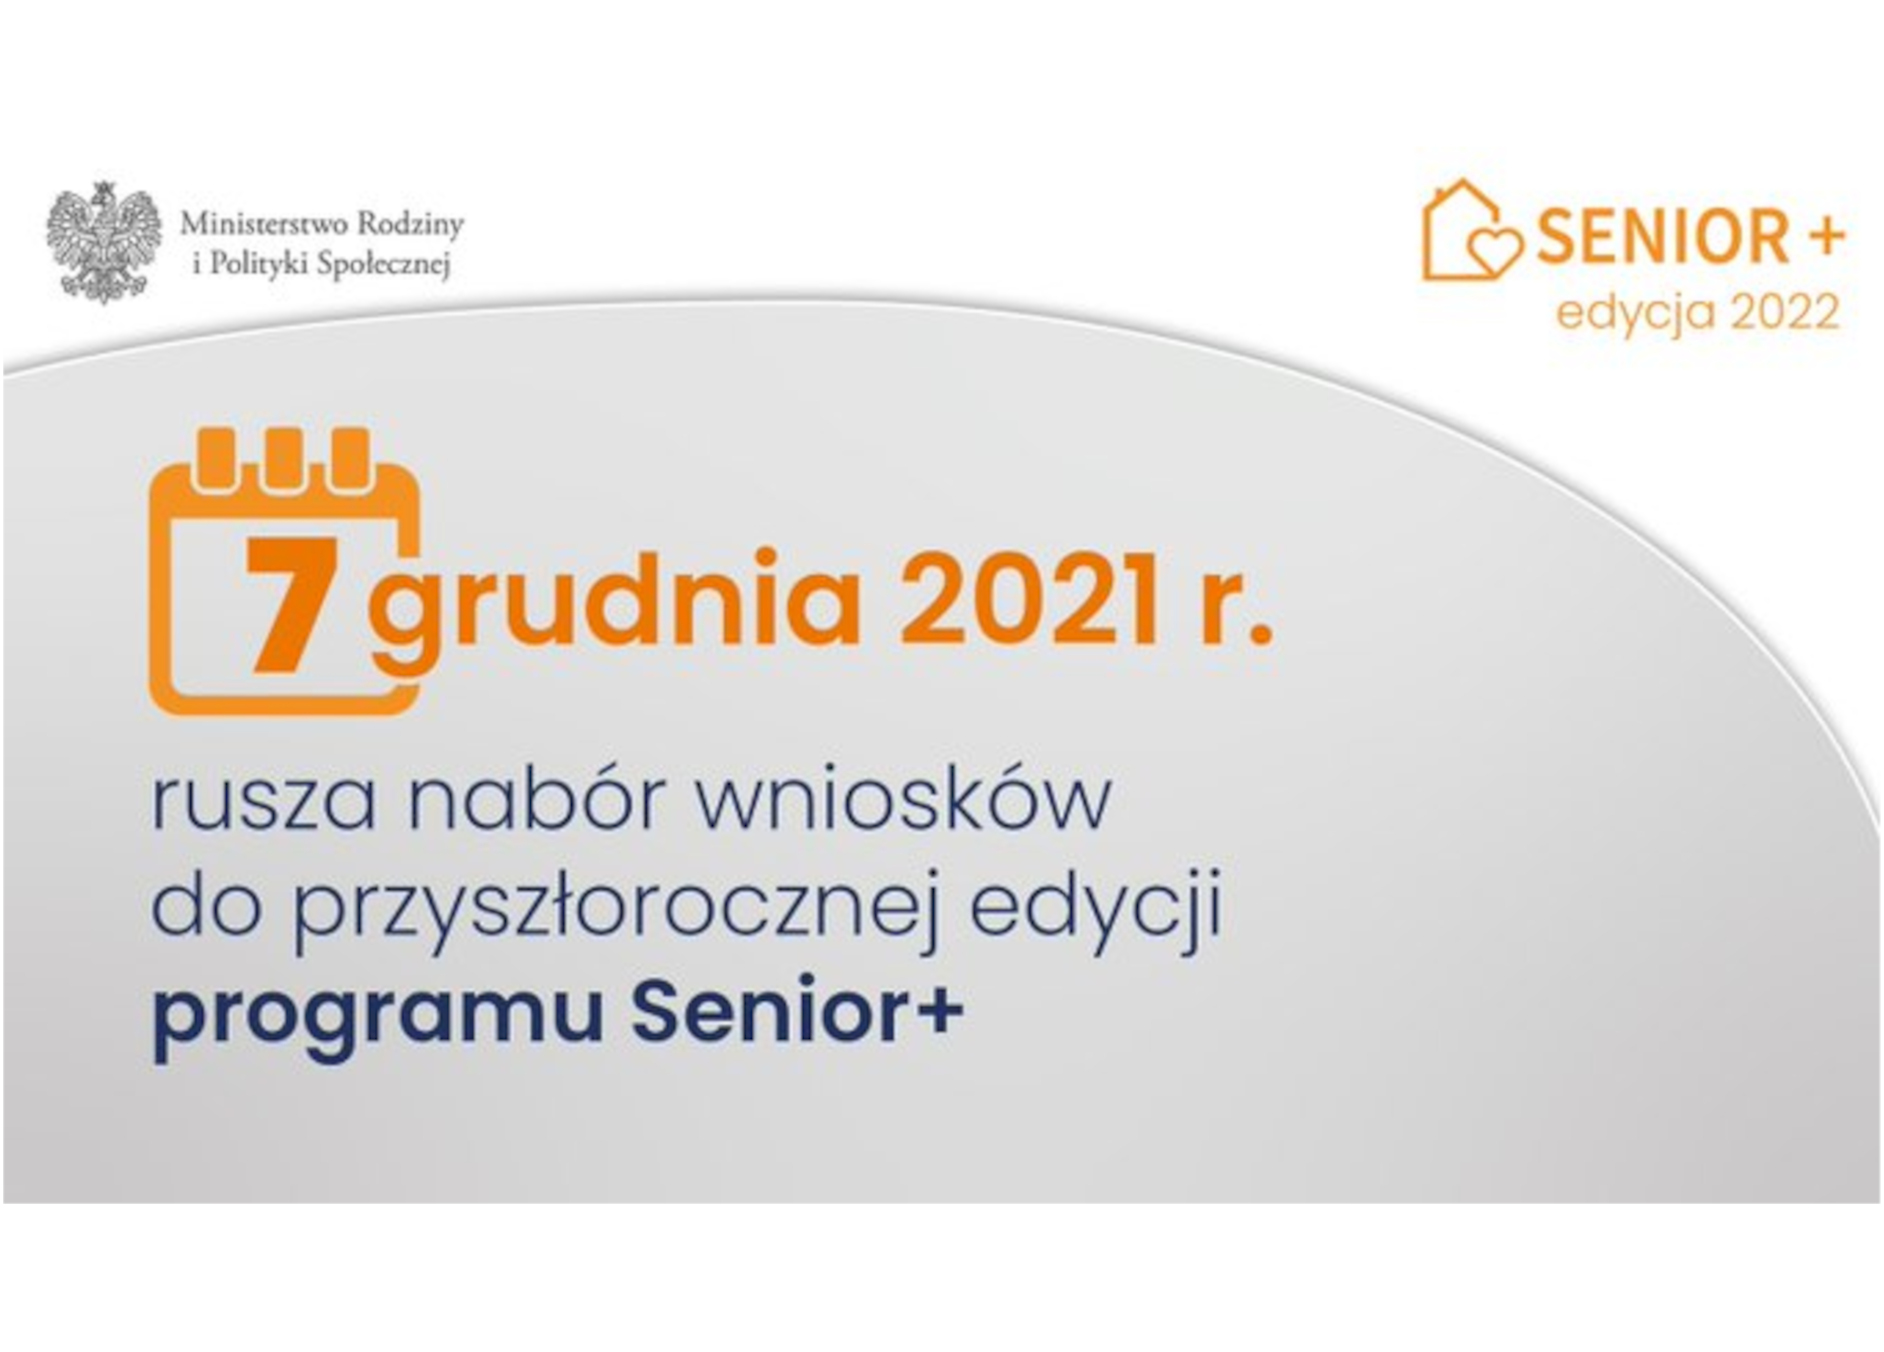 Konkurs „Senior+” edycja 2022 r.